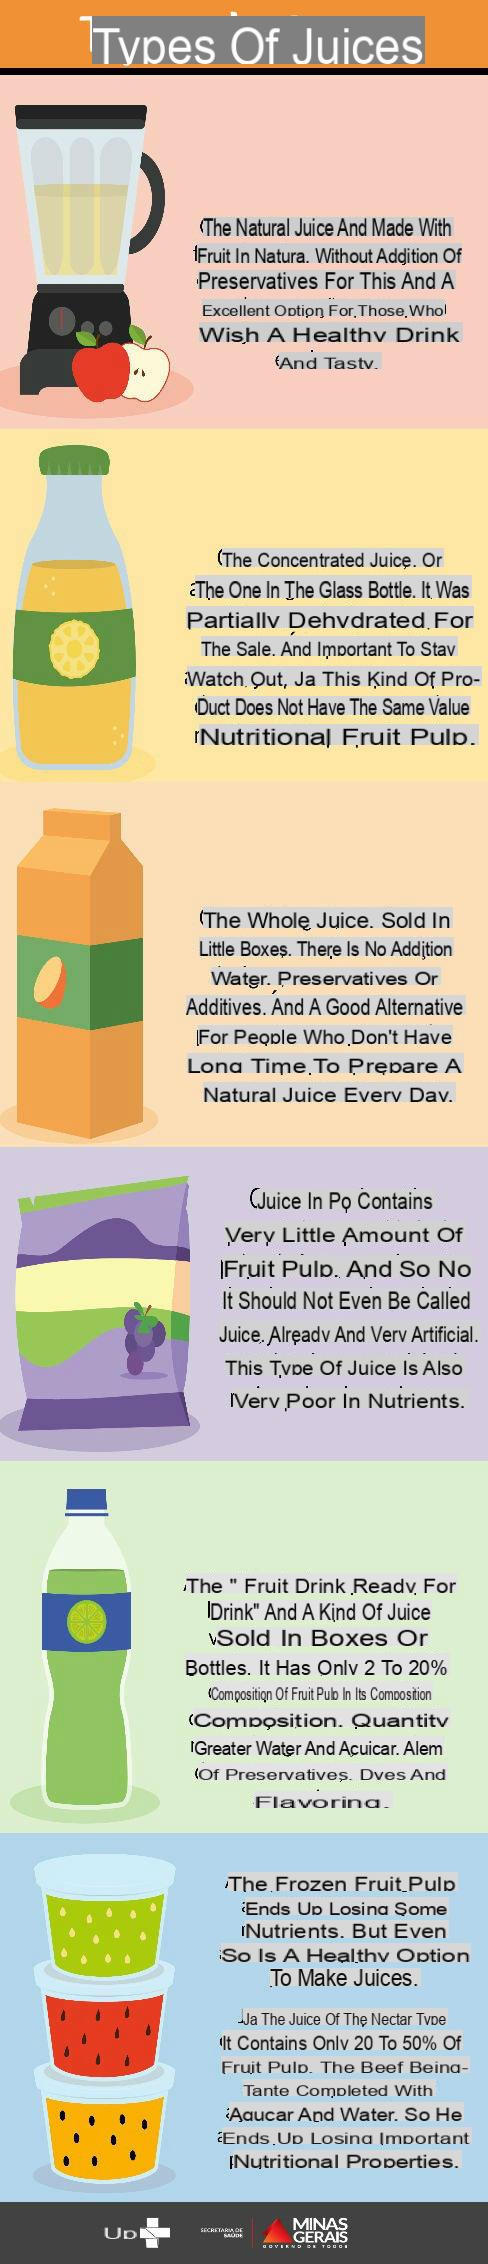 Tipos de jugos de frutas: pros y contras